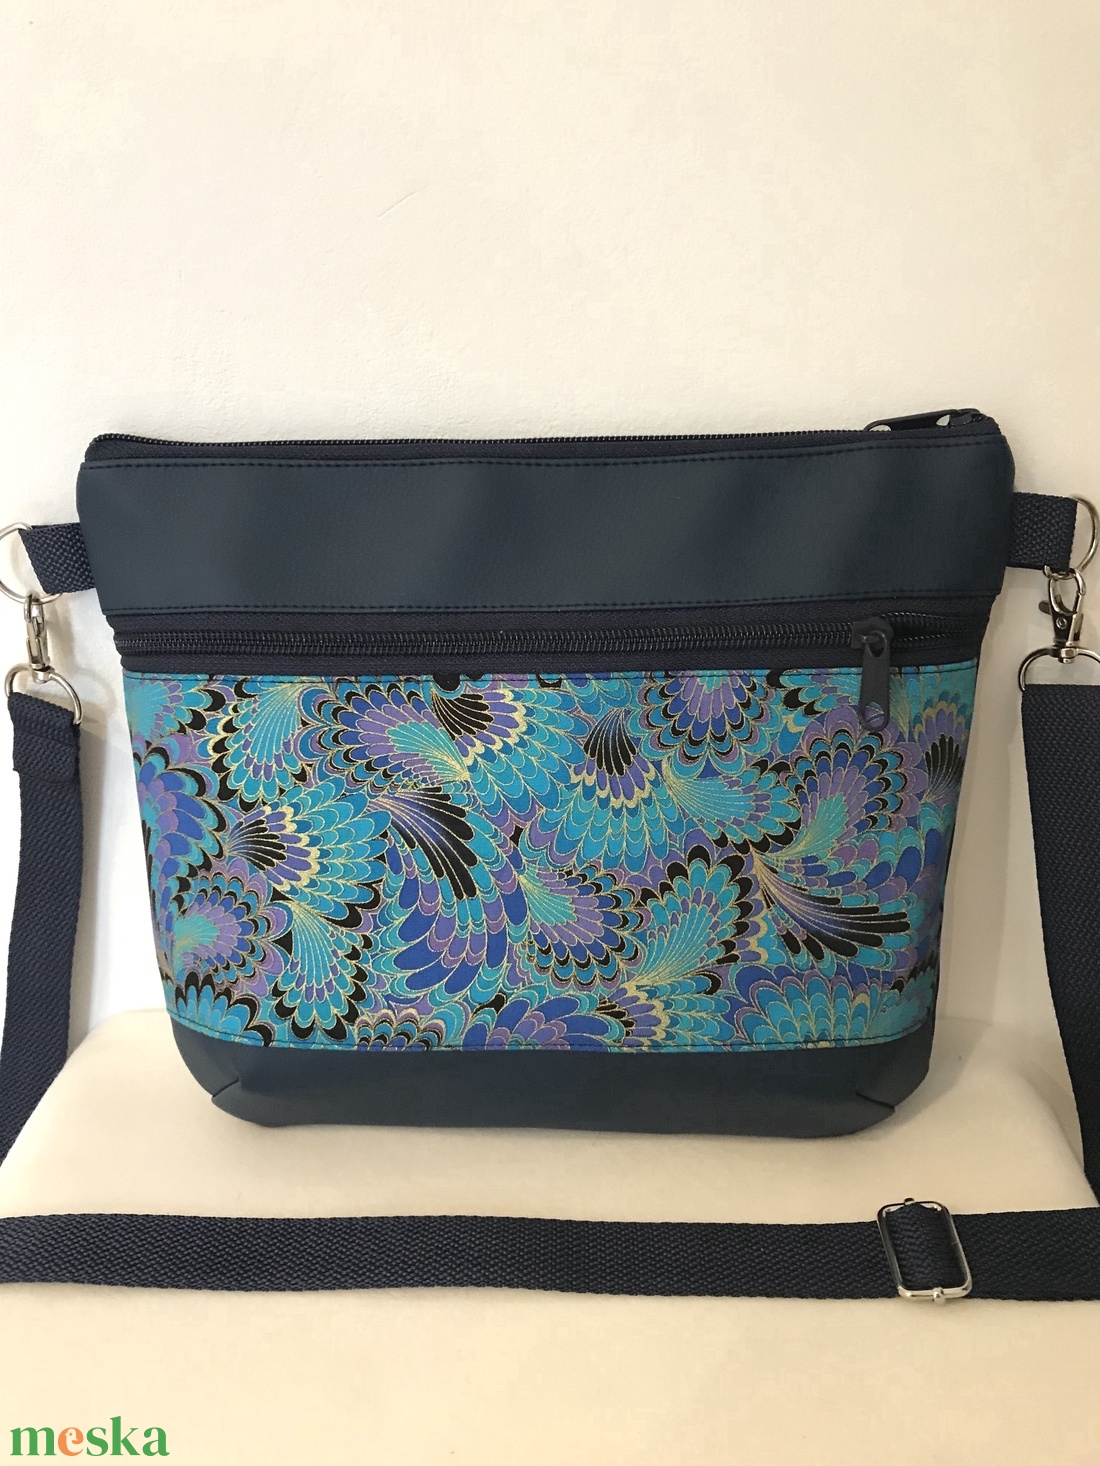 Különleges kék, egyedi mintás vállon átvethető táska, oldaltáska, válltáska - táska & tok - kézitáska & válltáska - vállon átvethető táska - Meska.hu